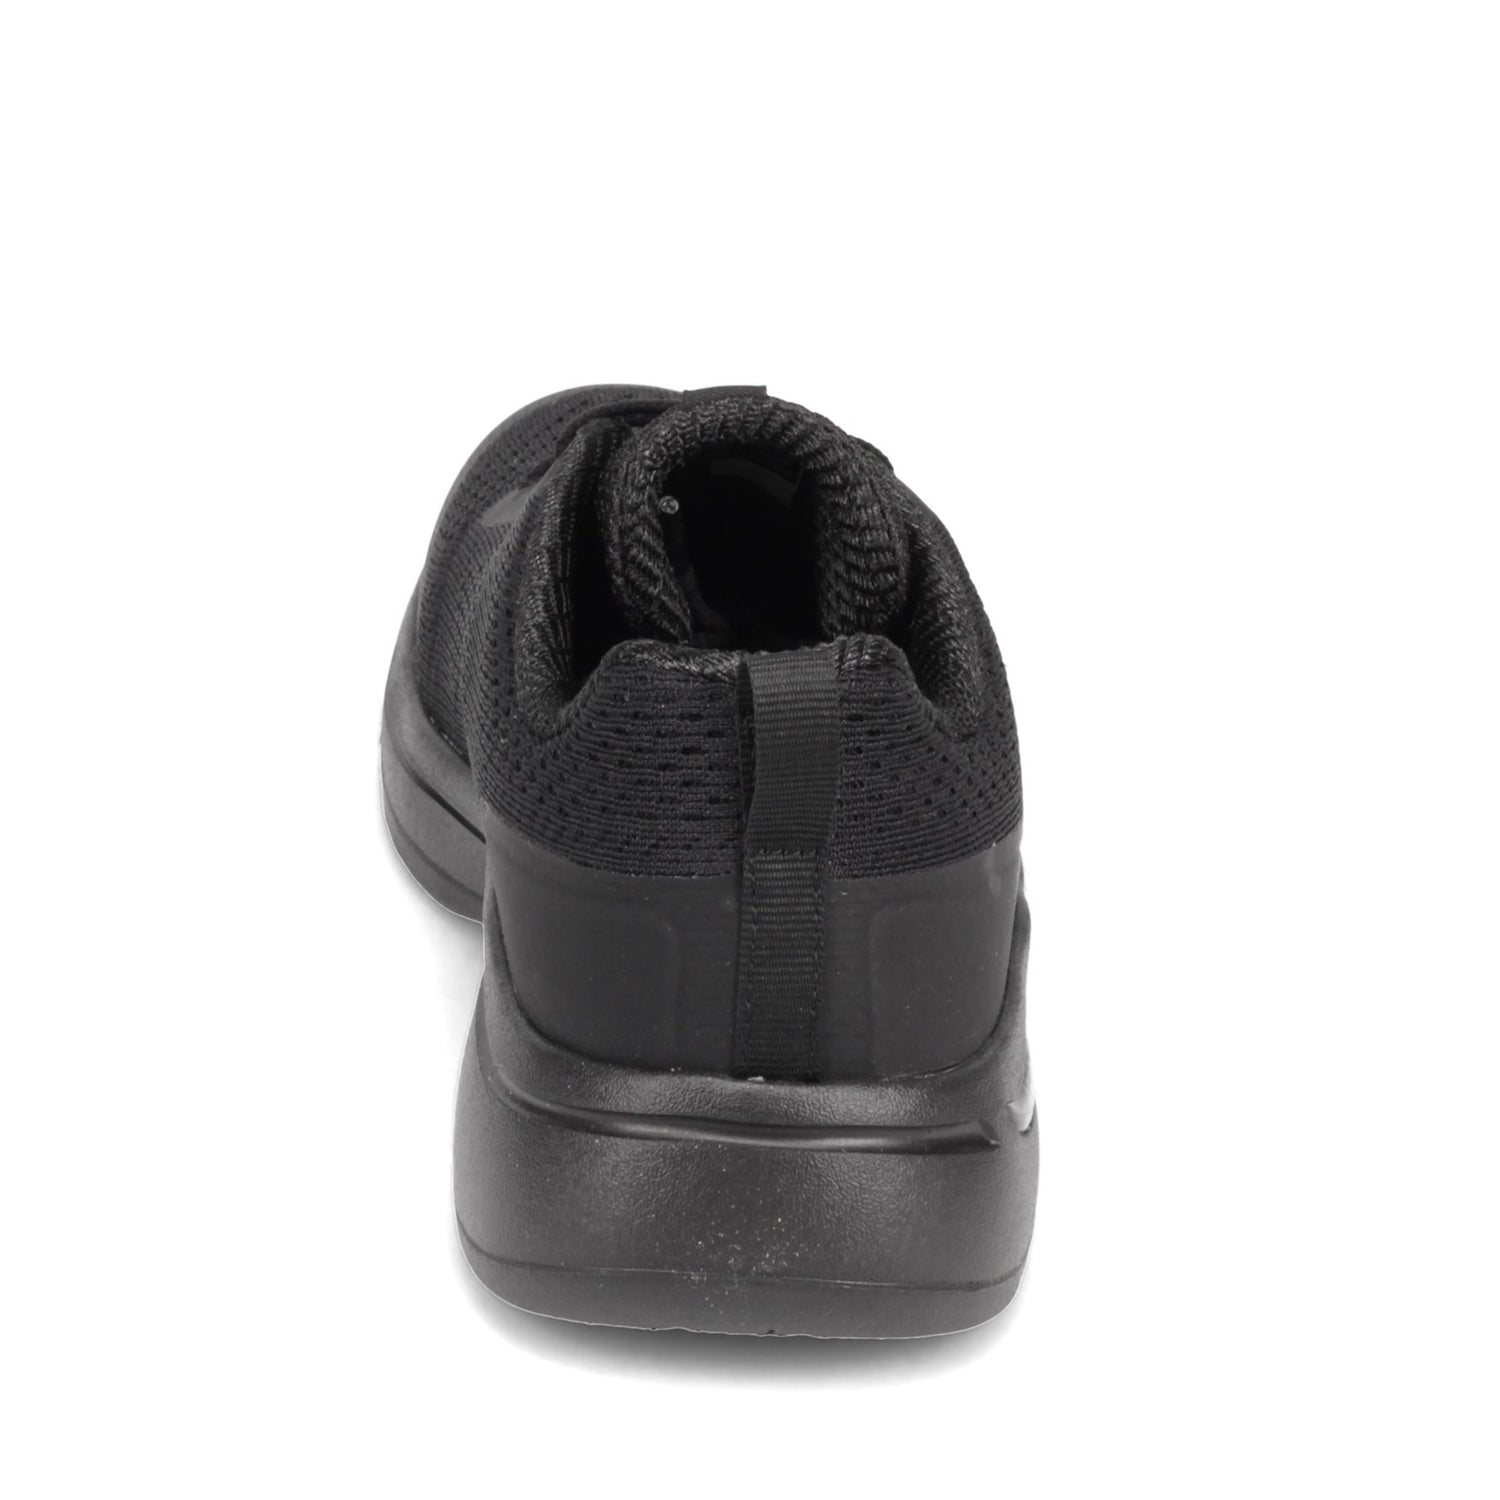 Peltz Shoes  Women's Skechers GOwalk Arch Fit - Motion Breeze Sneaker - Wide Width BLACK 124404W-BBK